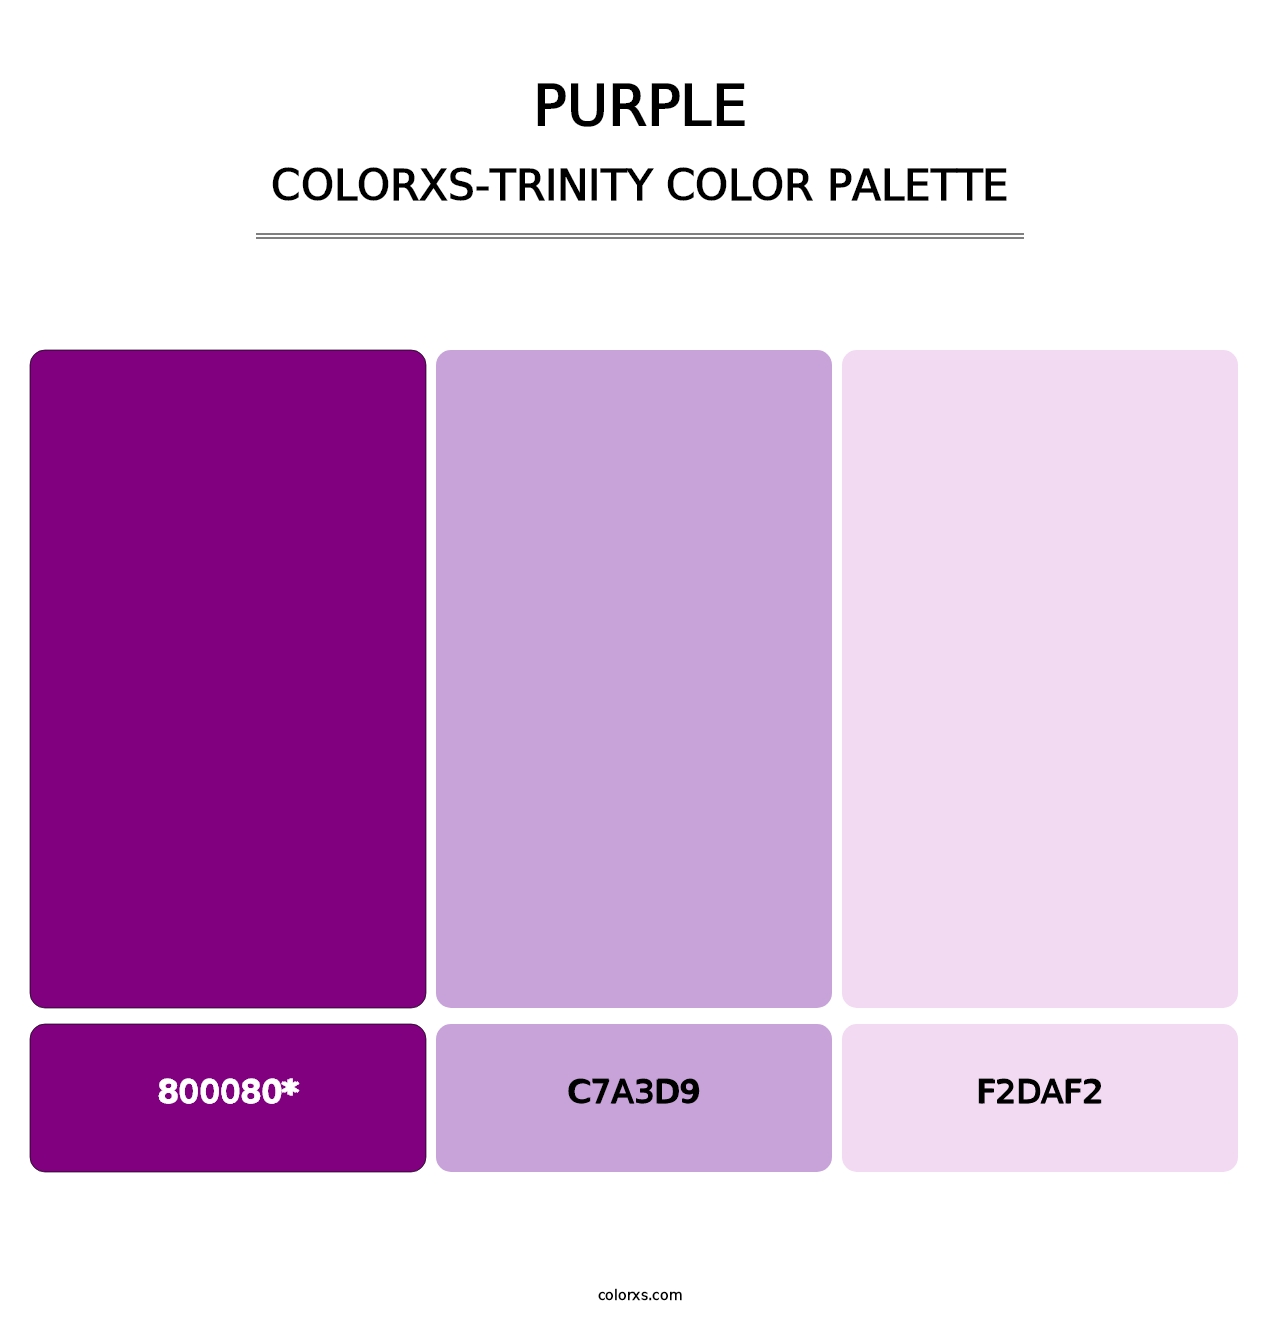 Purple - Colorxs Trinity Palette